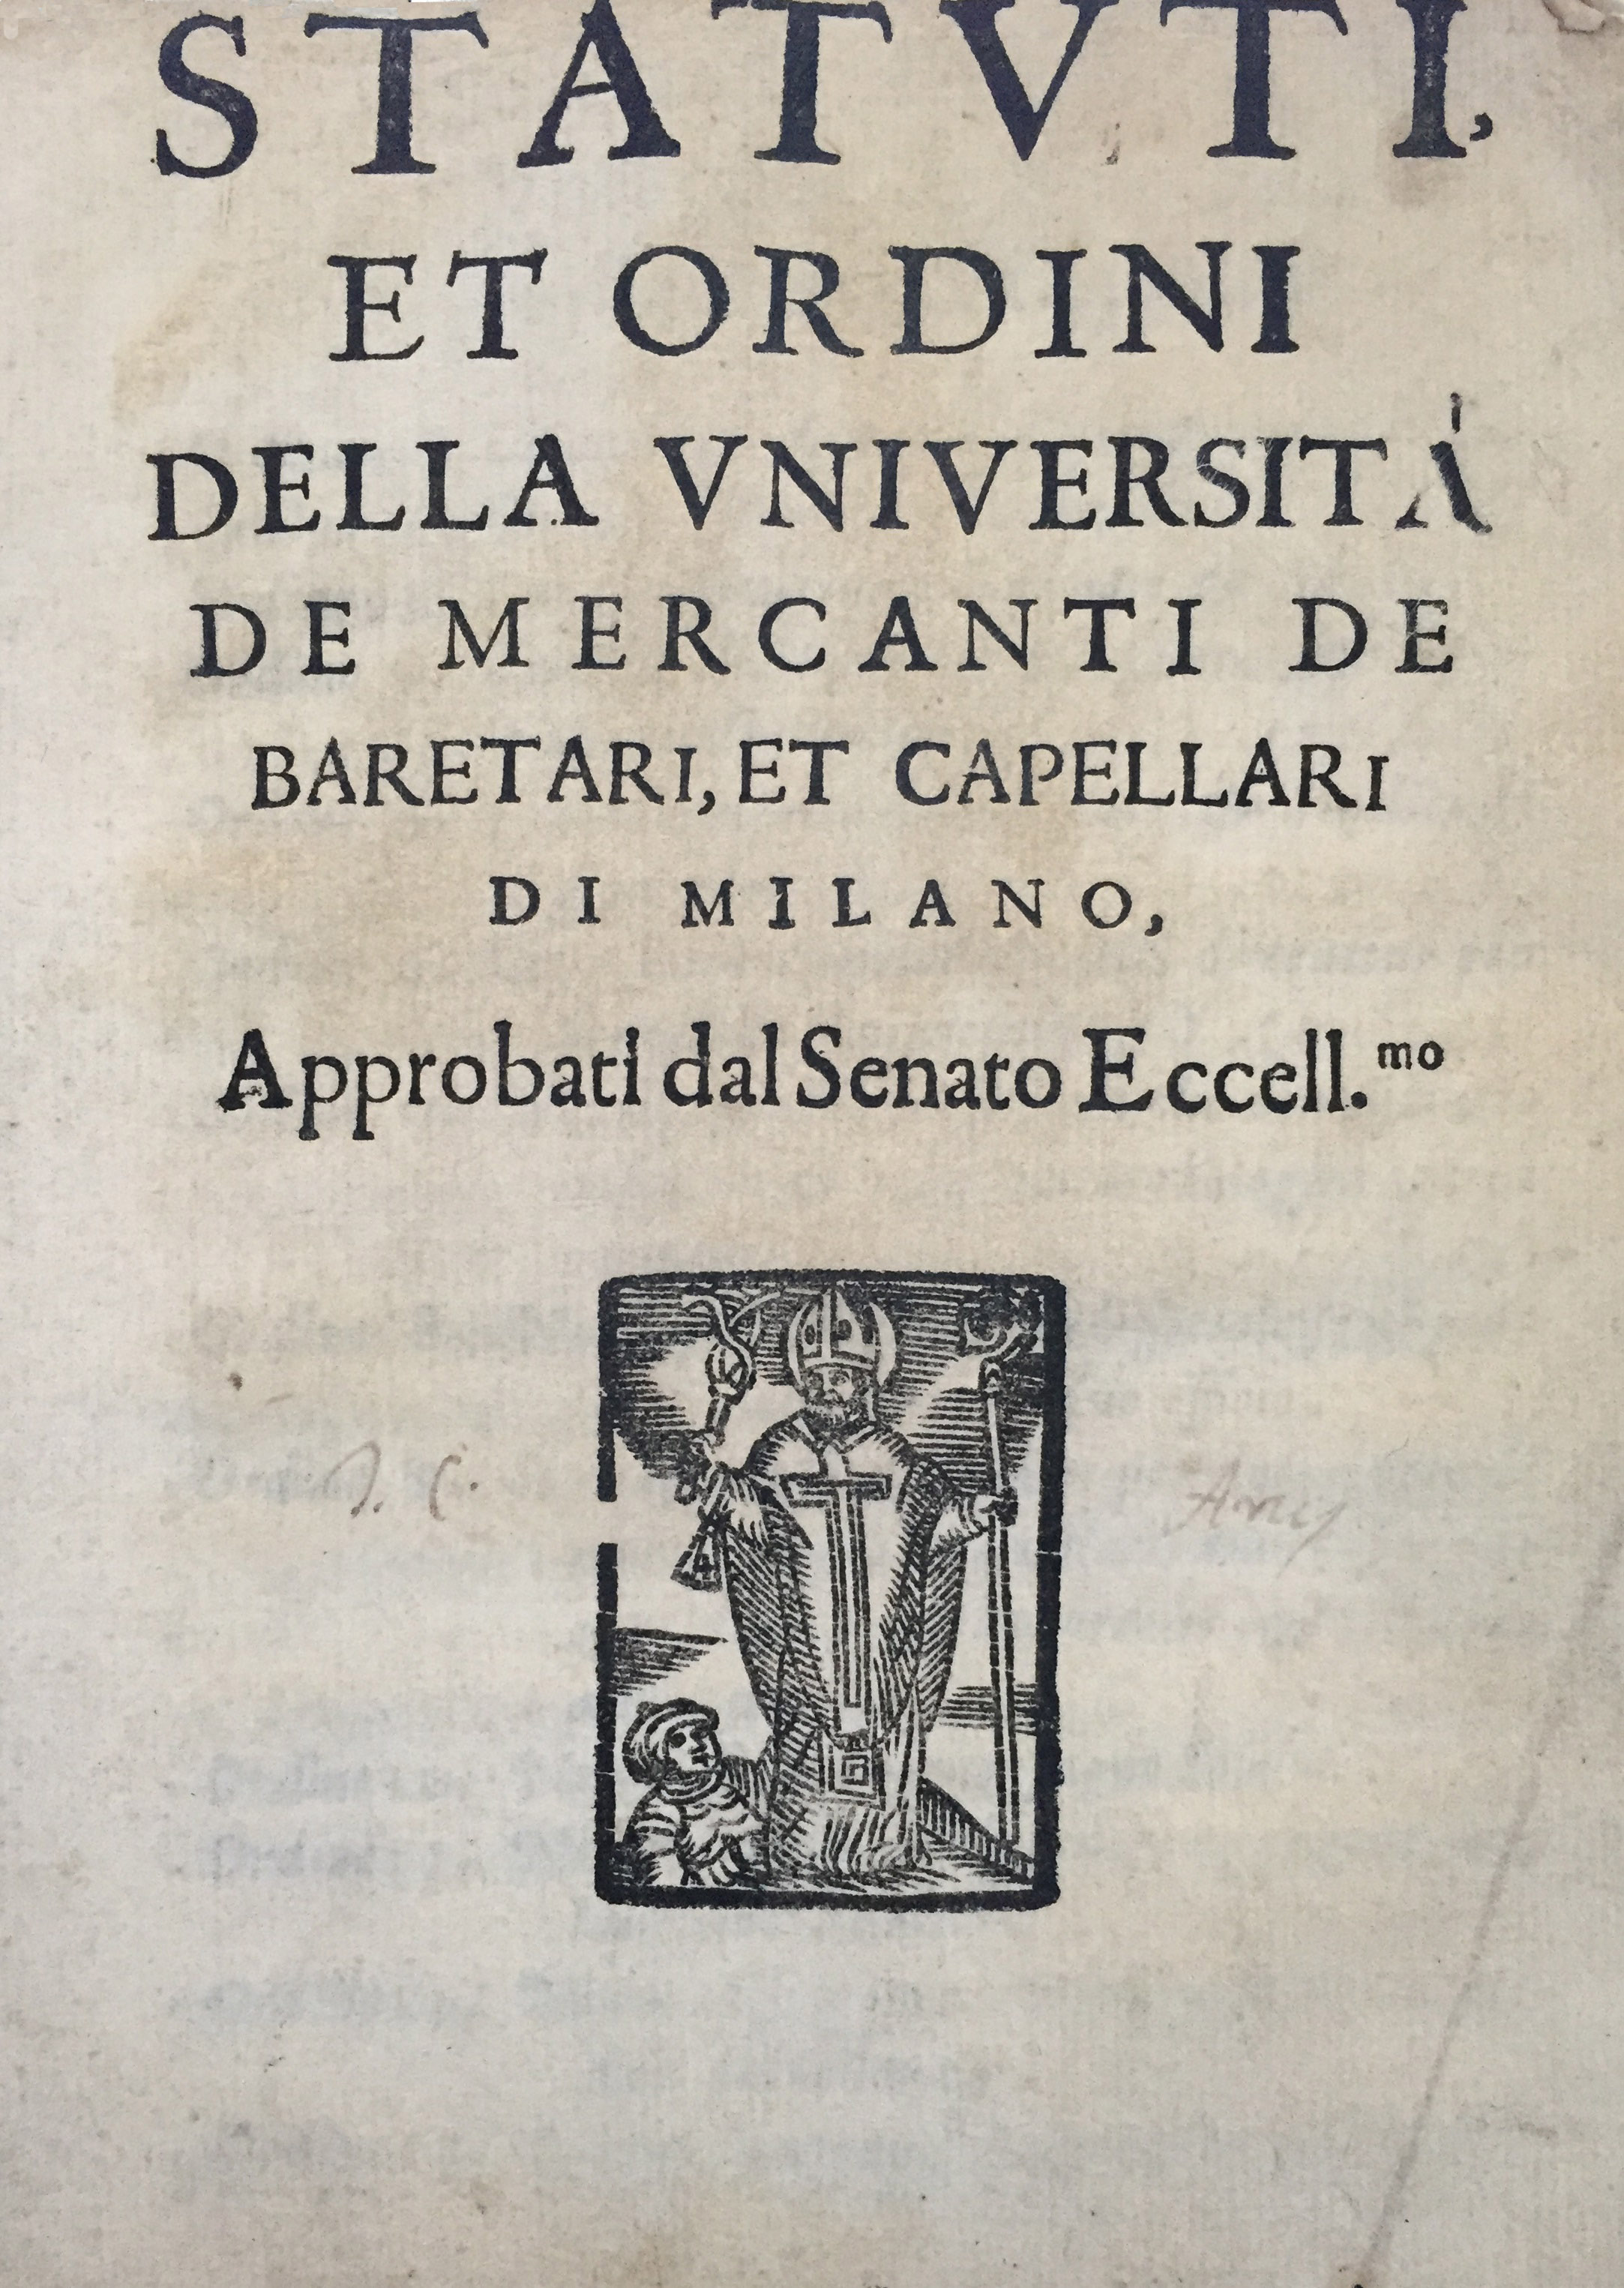 Statuti, et ordini della università de’ mercanti de’ baretari, et capellari di Milano